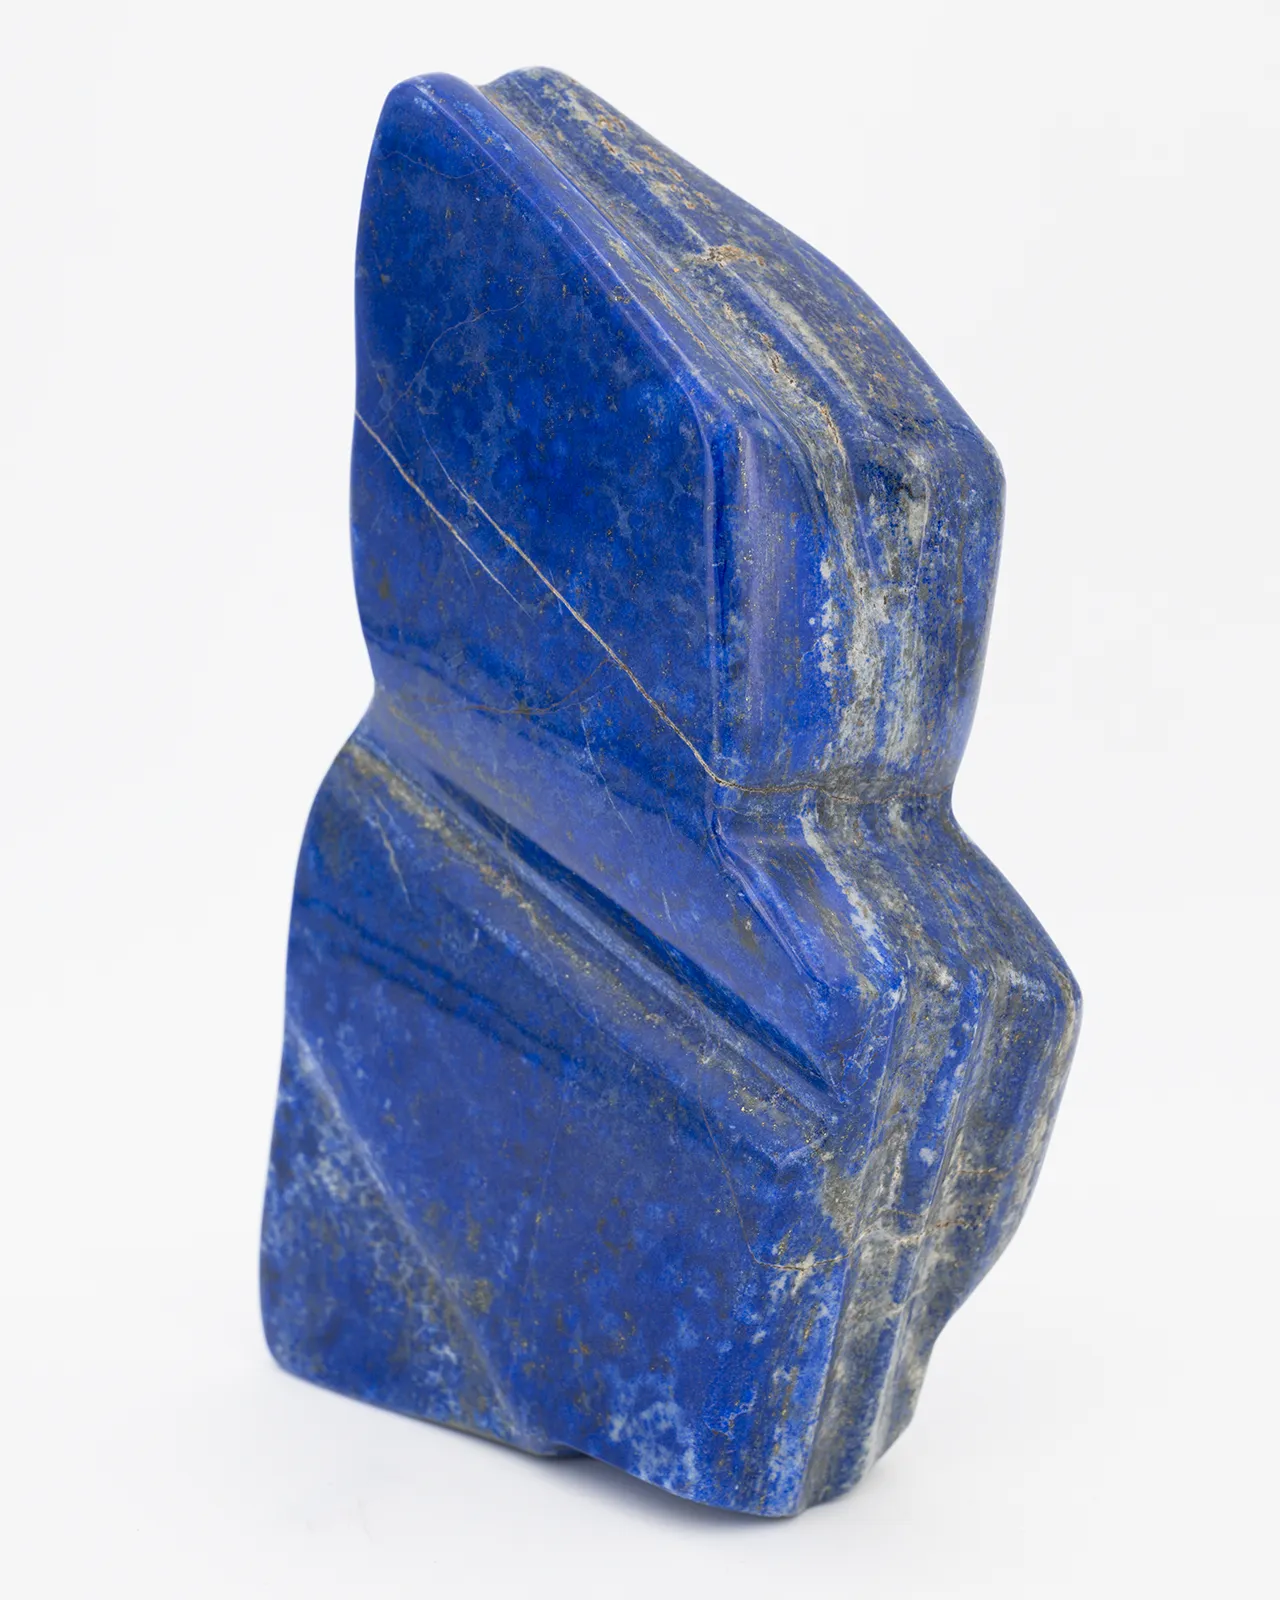 Lapis lazuli en forme libre de 2KG à poser sur un meuble dans un salon ou atelier d'artiste